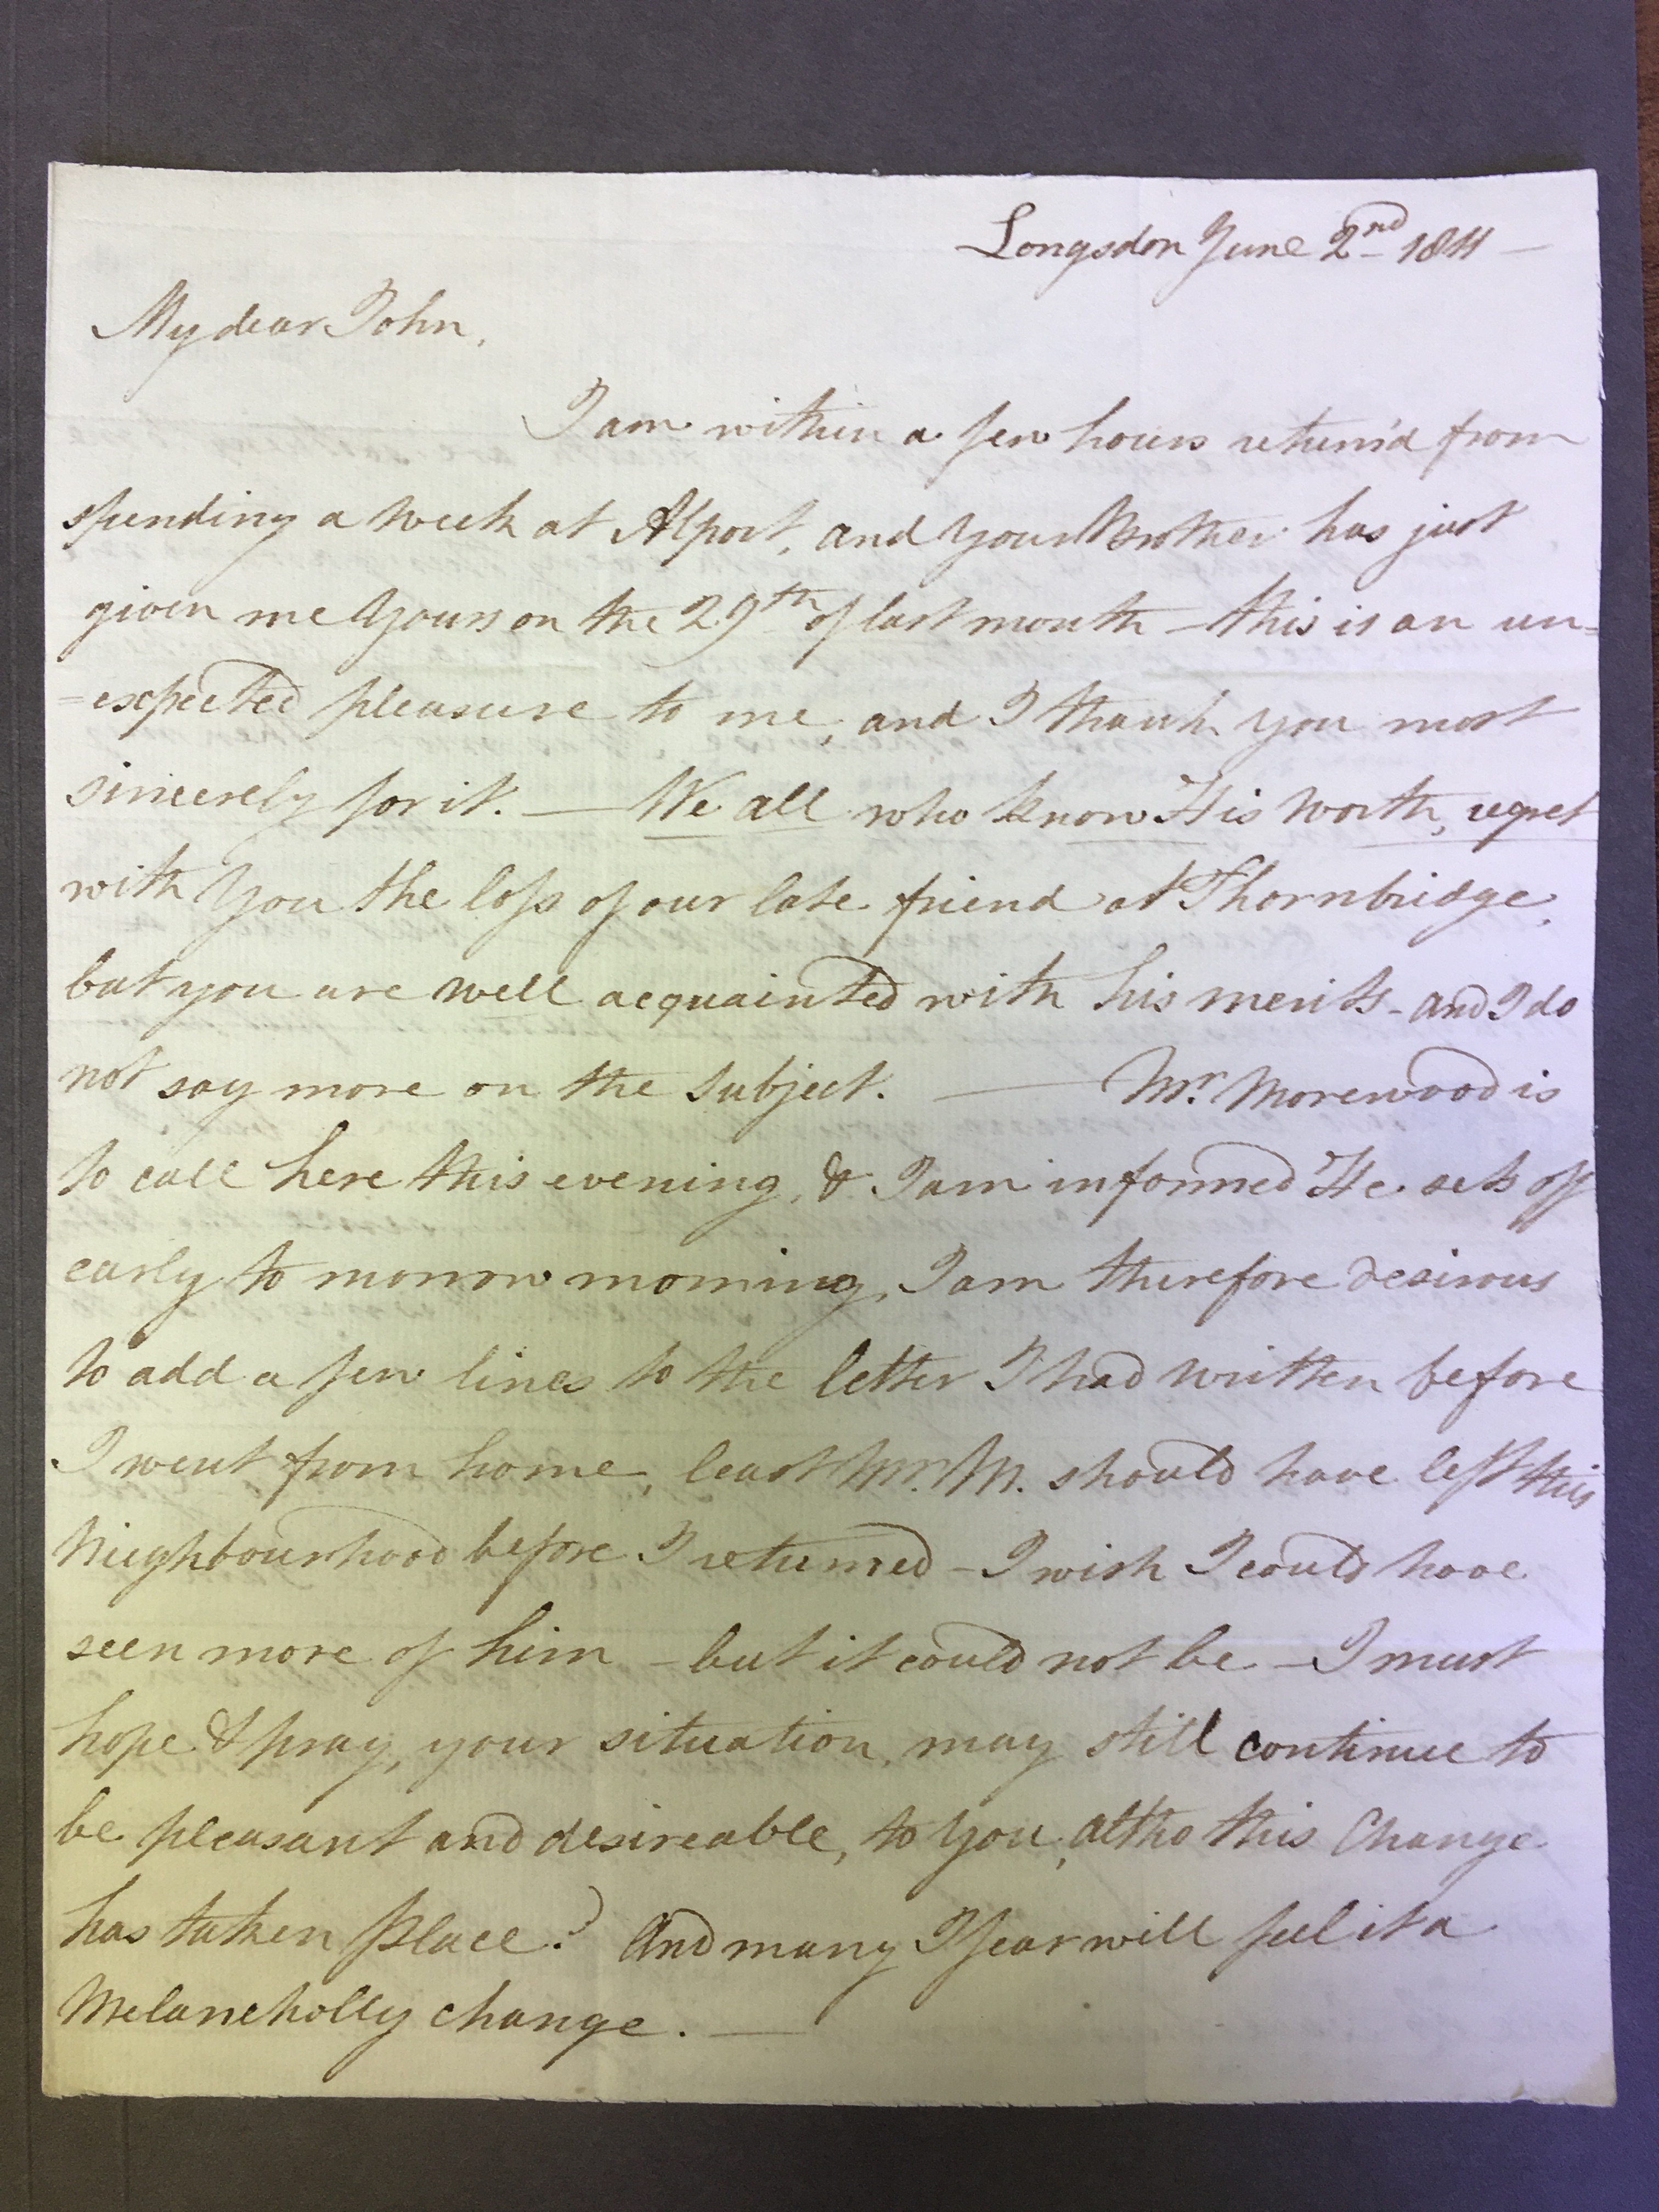 Image #1 of letter: Elizabeth Longsdon (snr) and James Longsdon (jnr) to John Longsdon, 2 June 1811